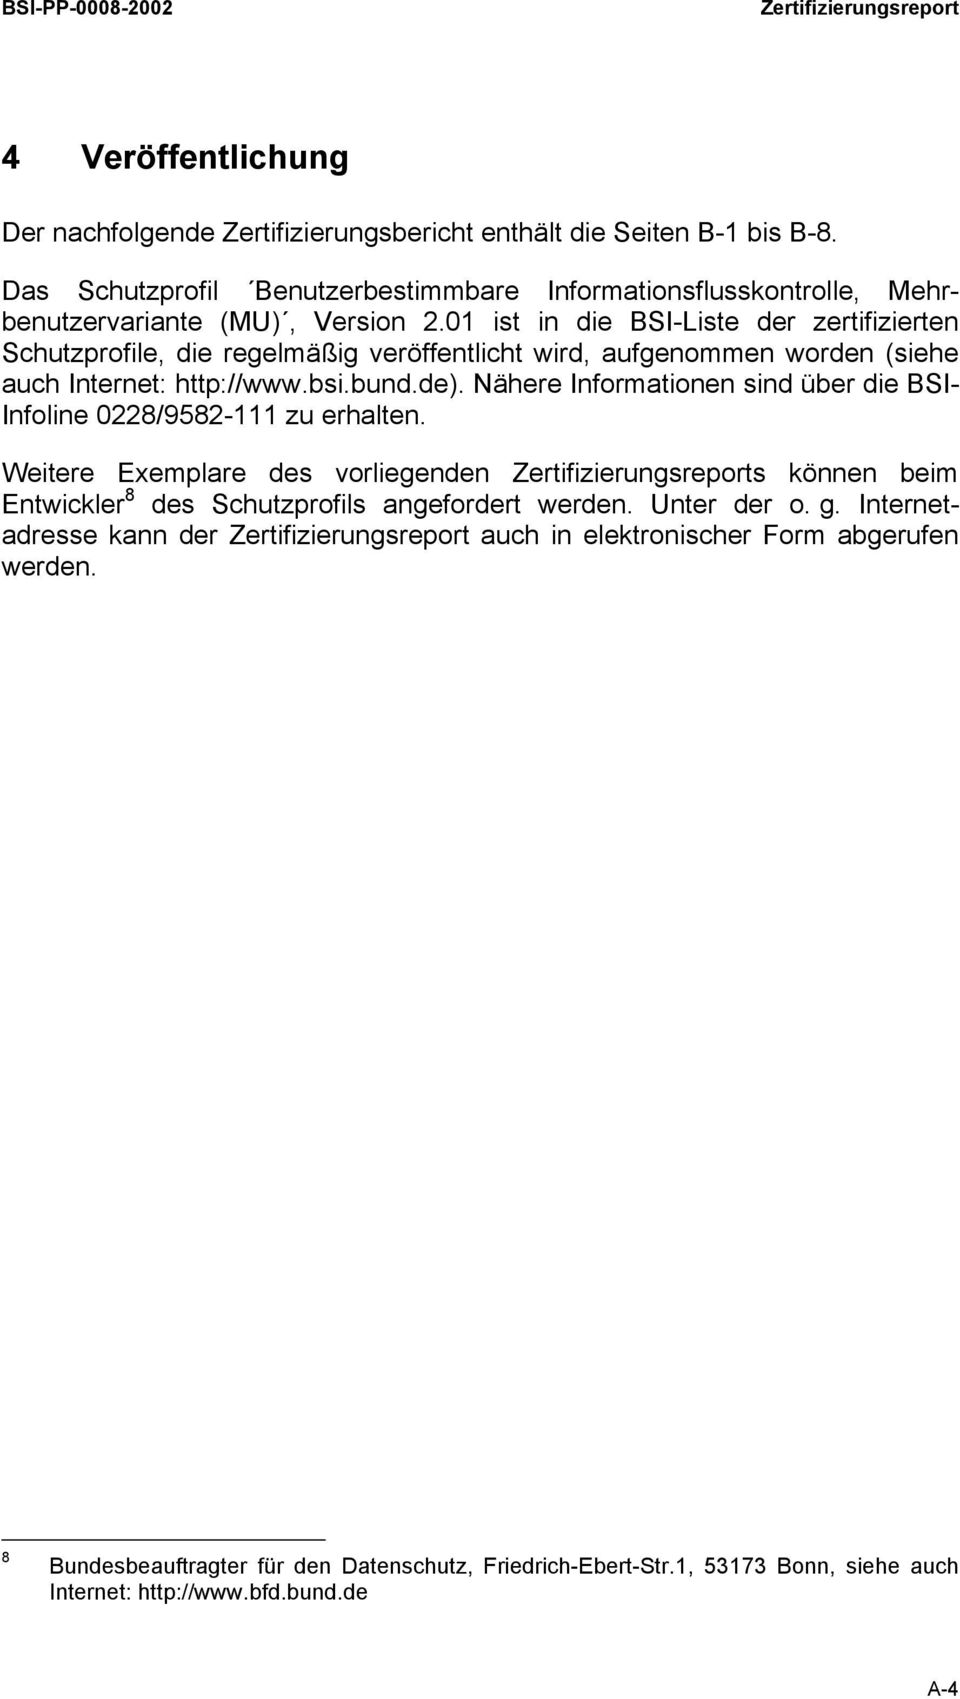 01 ist in die BSI-Liste der zertifizierten Schutzprofile, die regelmäßig veröffentlicht wird, aufgenommen worden (siehe auch Internet: http://www.bsi.bund.de).